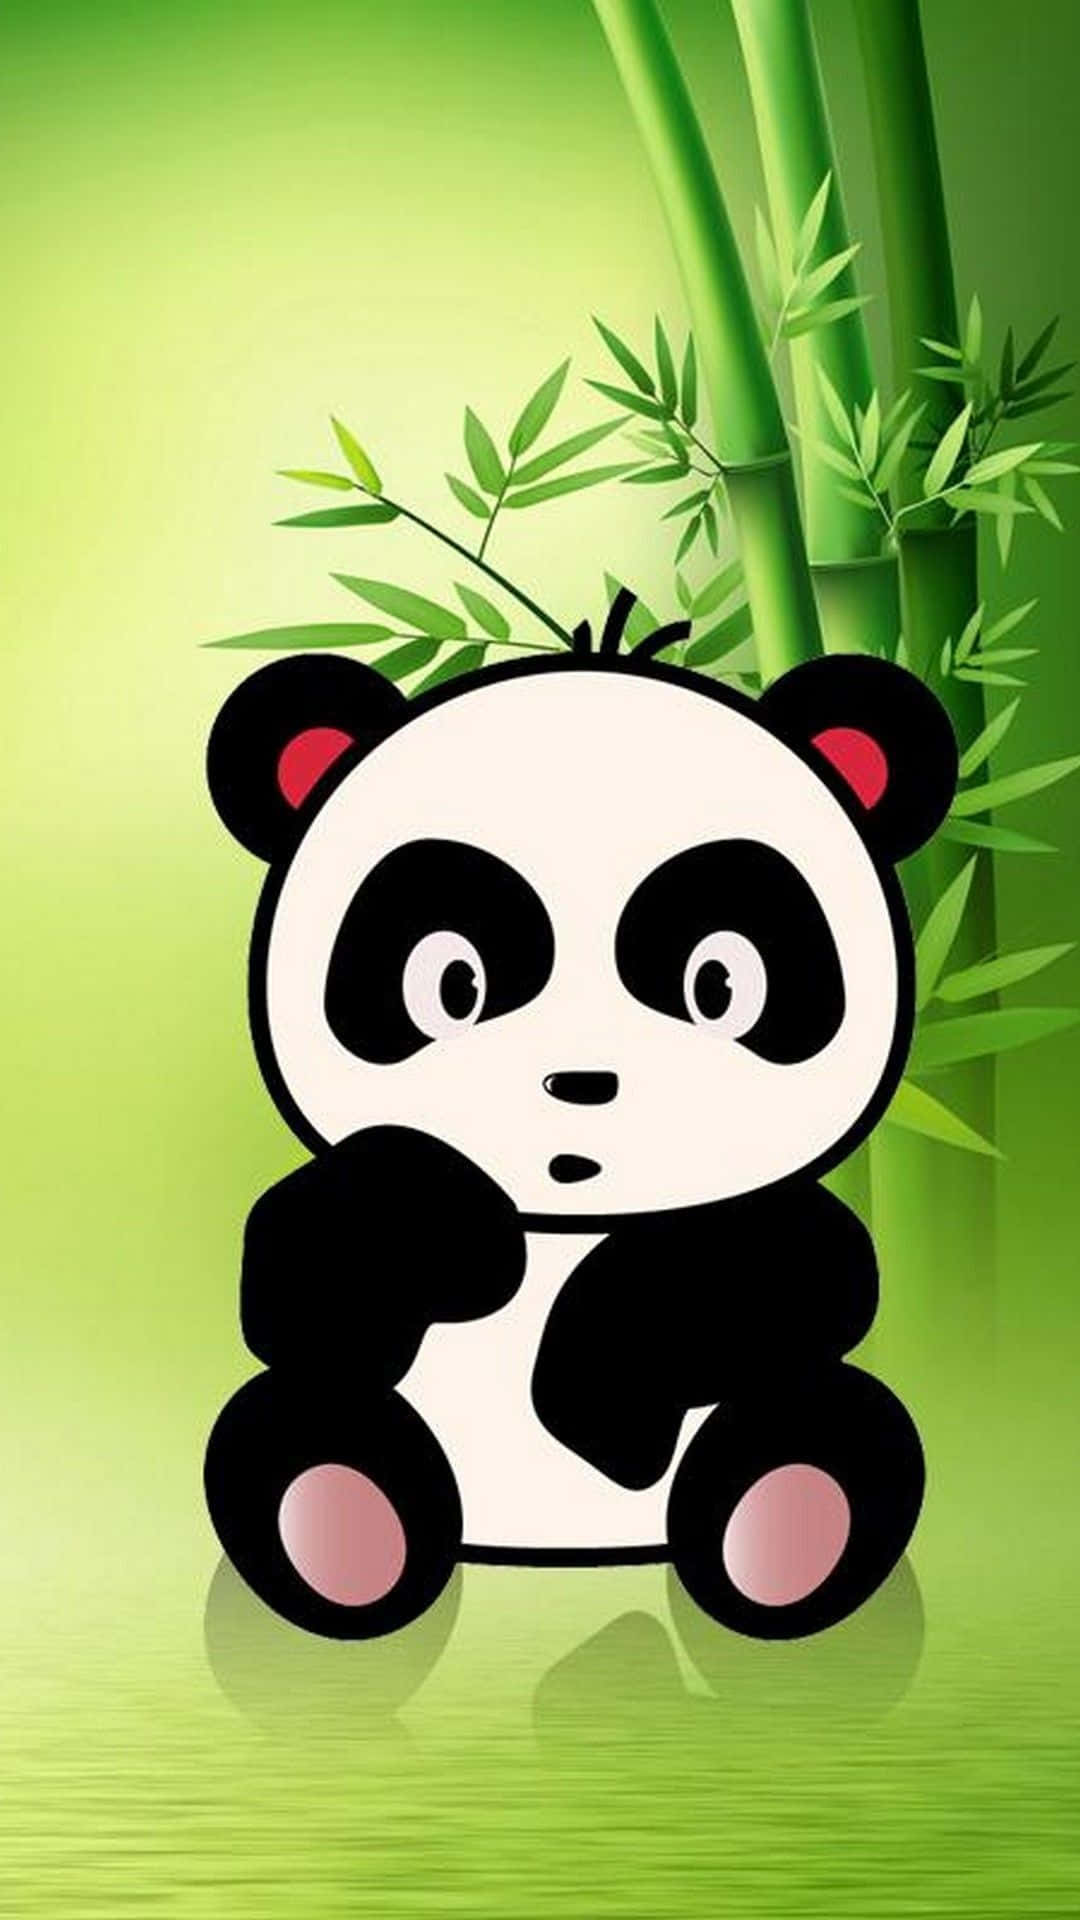 Cute Cartoon Panda With Bamboo Wallpaper